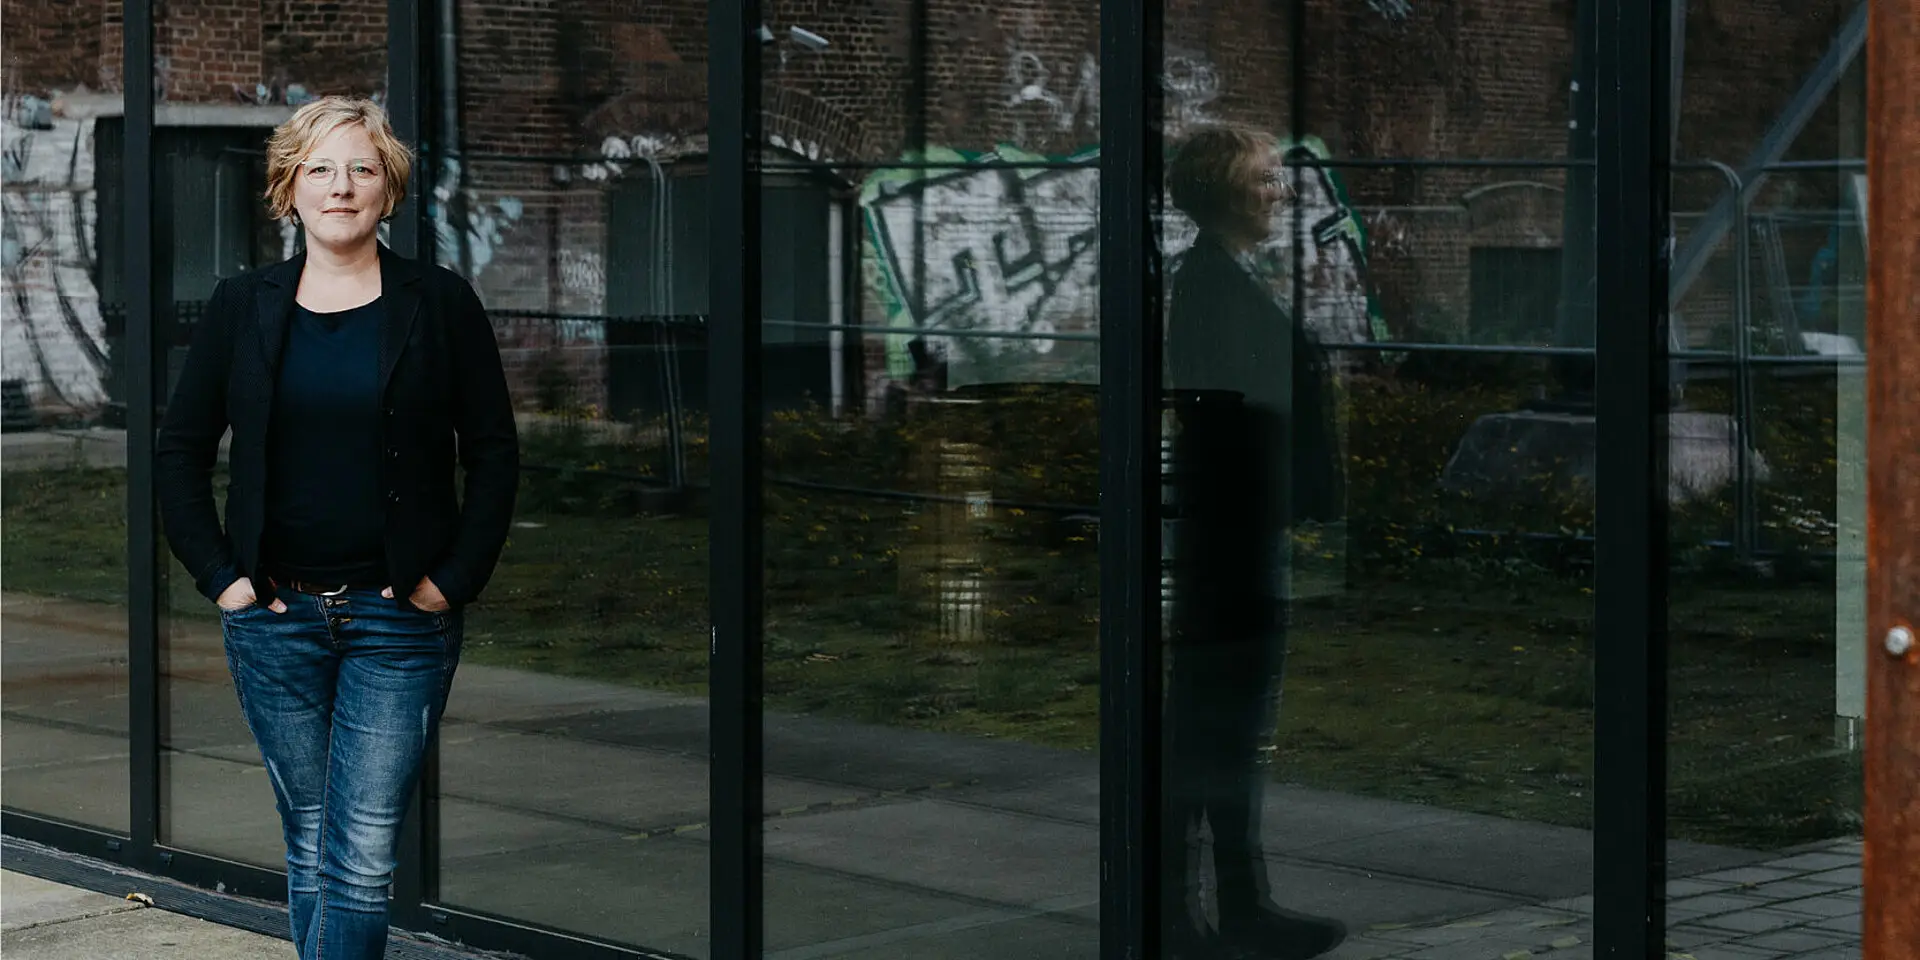 Katharina Schulte für einer sich spiegelnden, modernen Glasfassade. Im Hintergrund die Mauern einer alten Industrieanlage